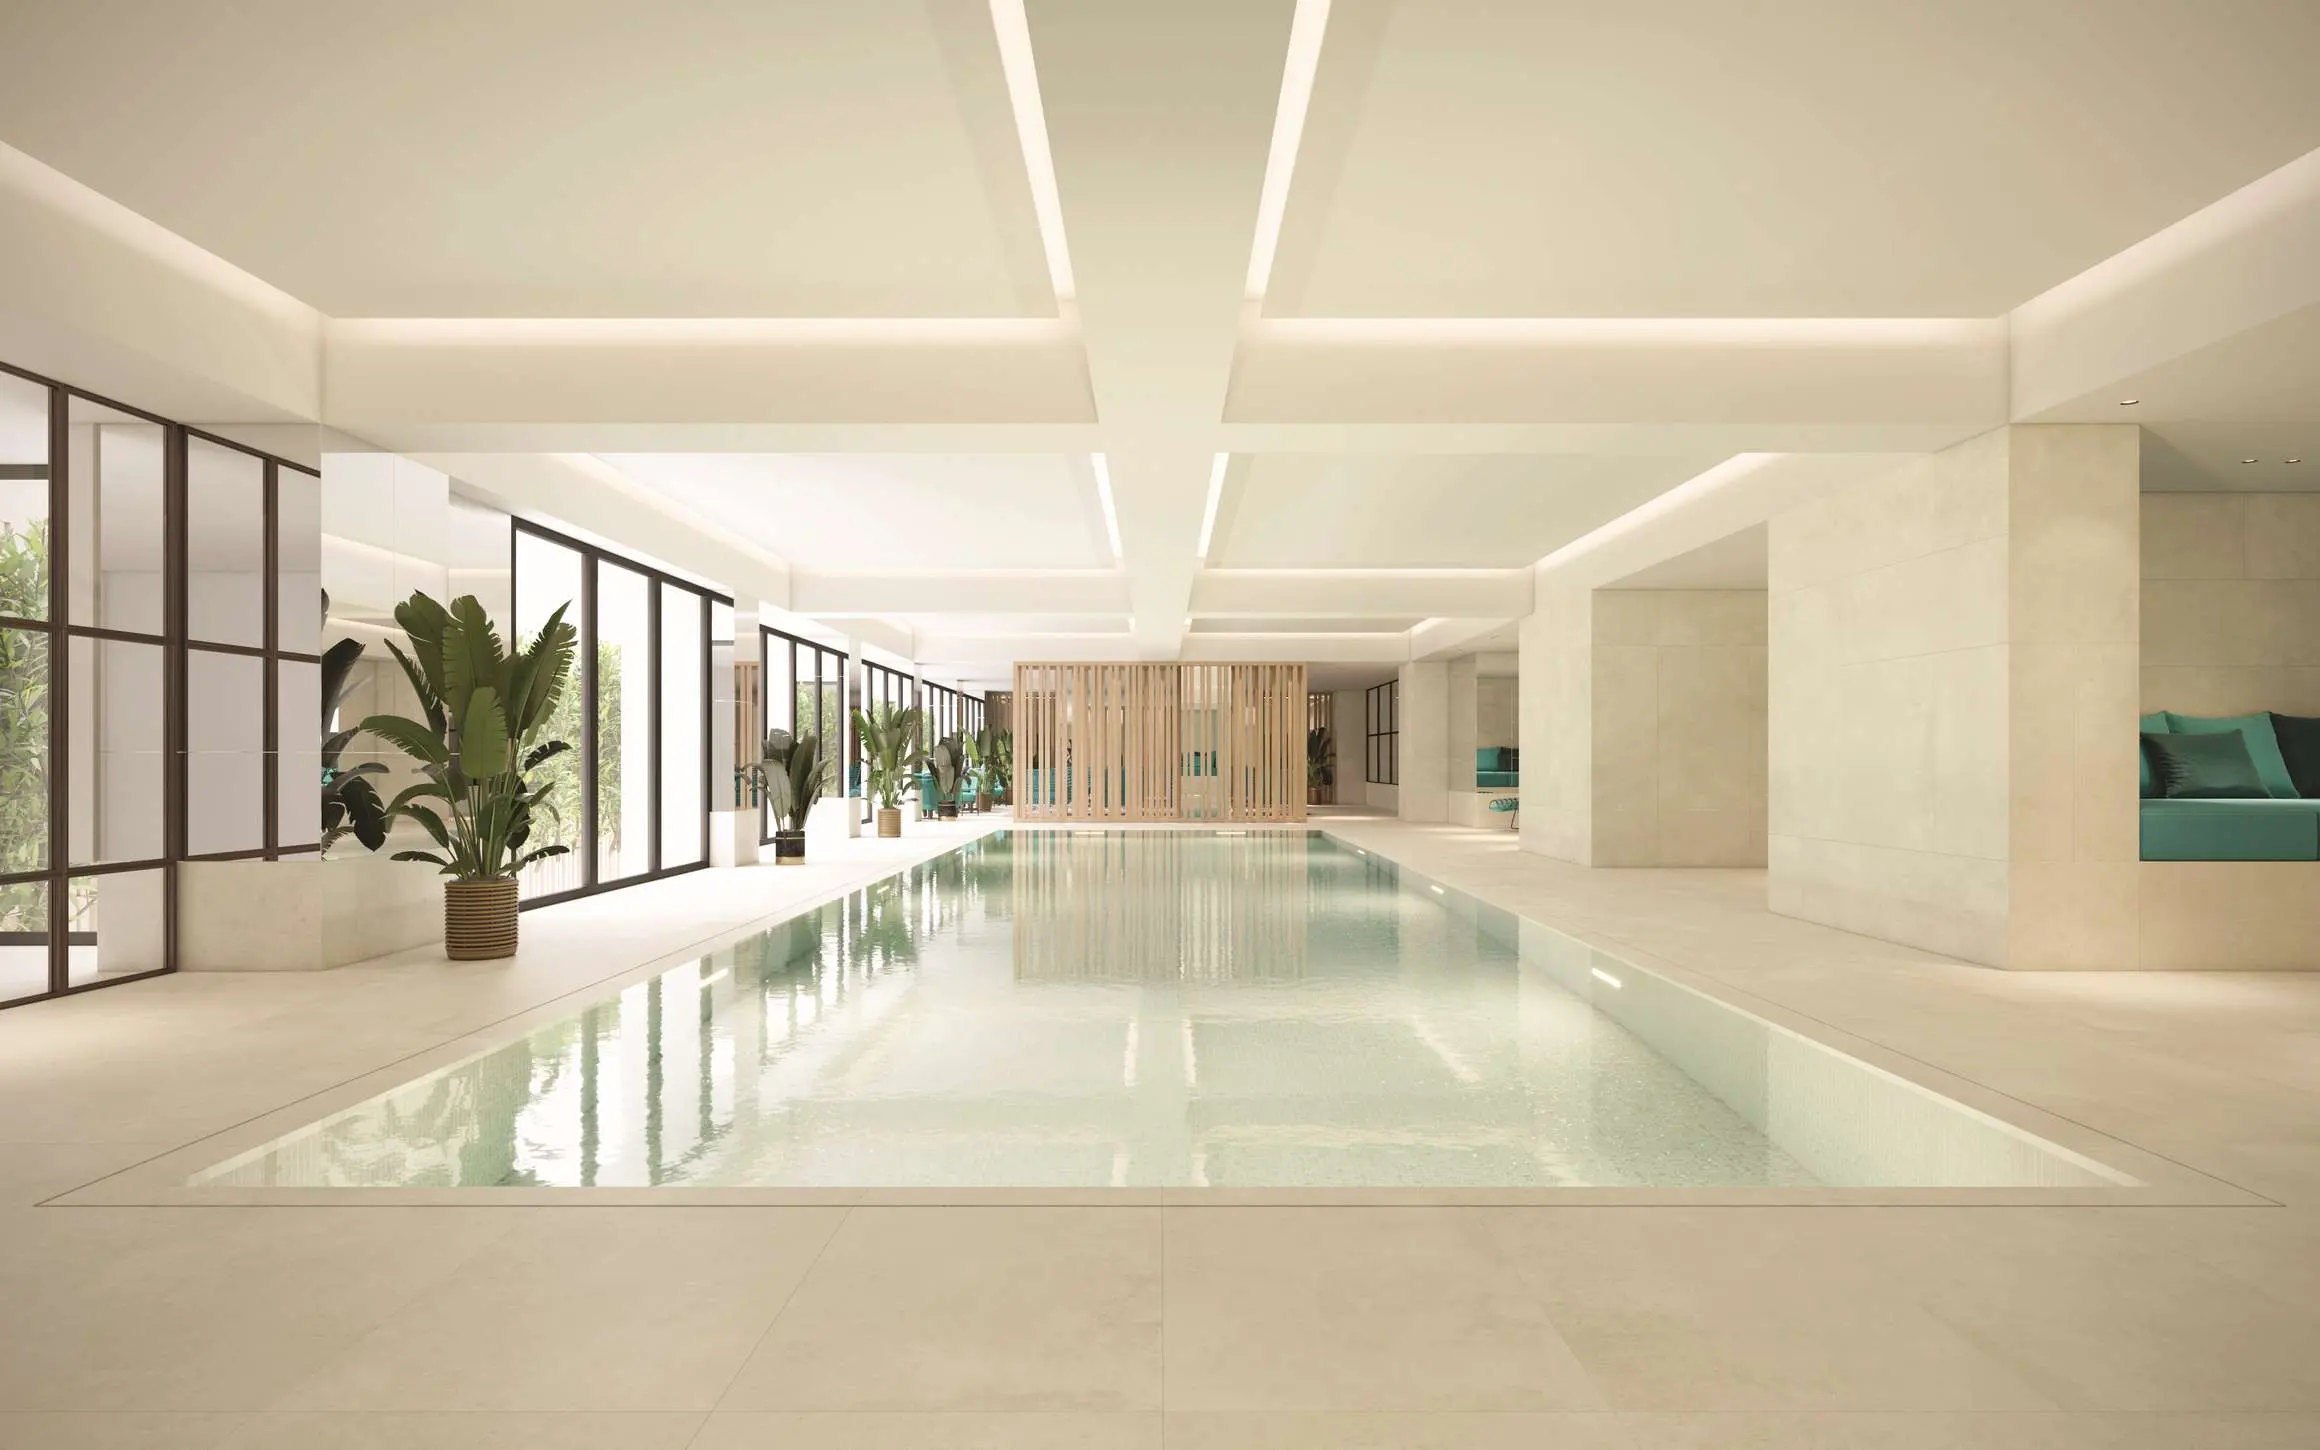 Le projet immobilier 58 Victor Hugo propose à ses habitants une piscine intérieure en mosaïque